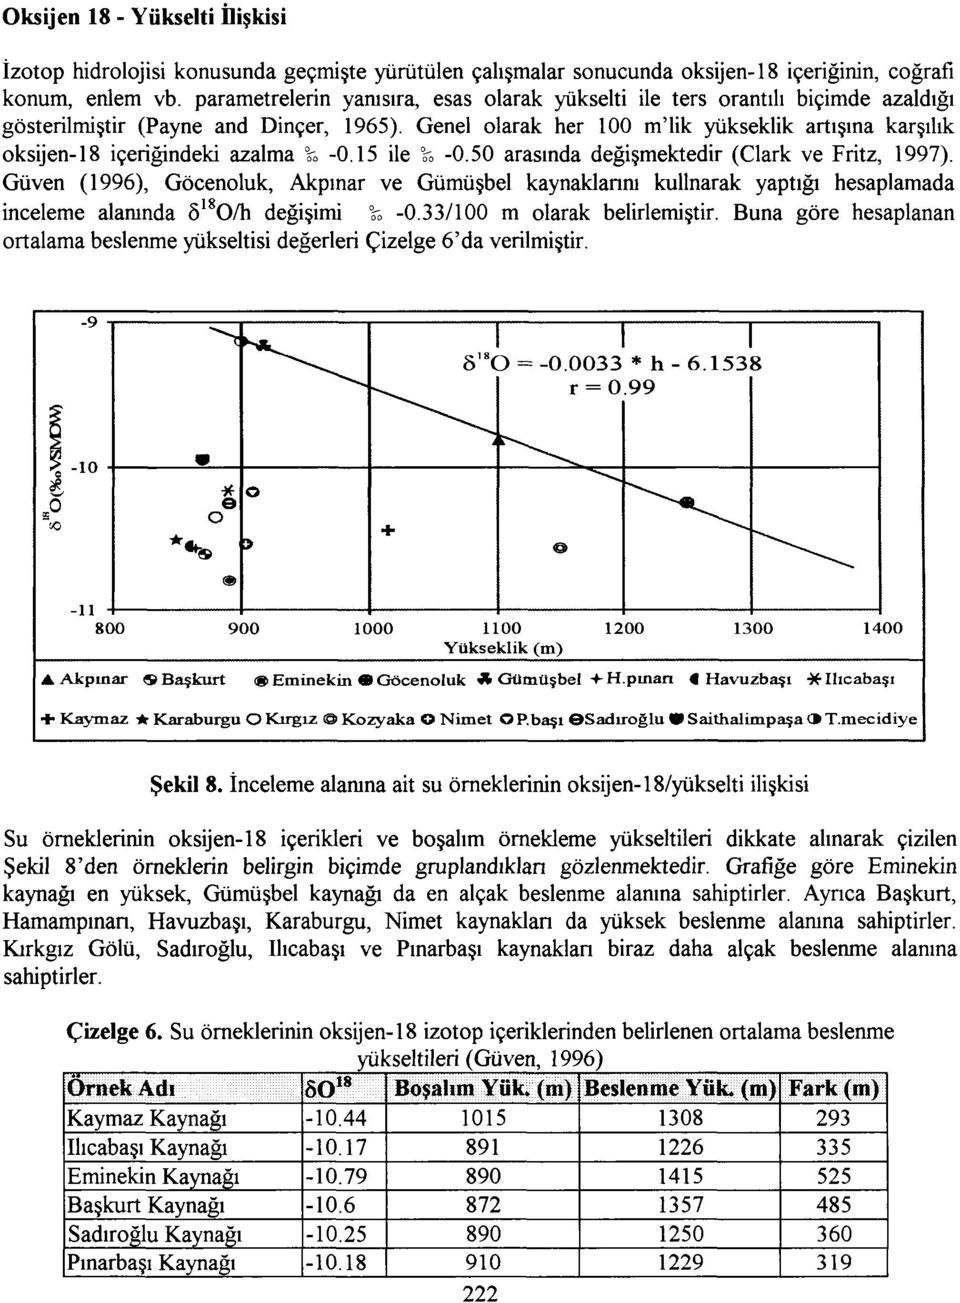 Genel olarak her 100 m'lik yükseklik artışına karşılık oksijen-18 içeriğindeki azalma -s* -0.15 ile \* -0.50 arasında değişmektedir (Clark ve Fritz, 1997).